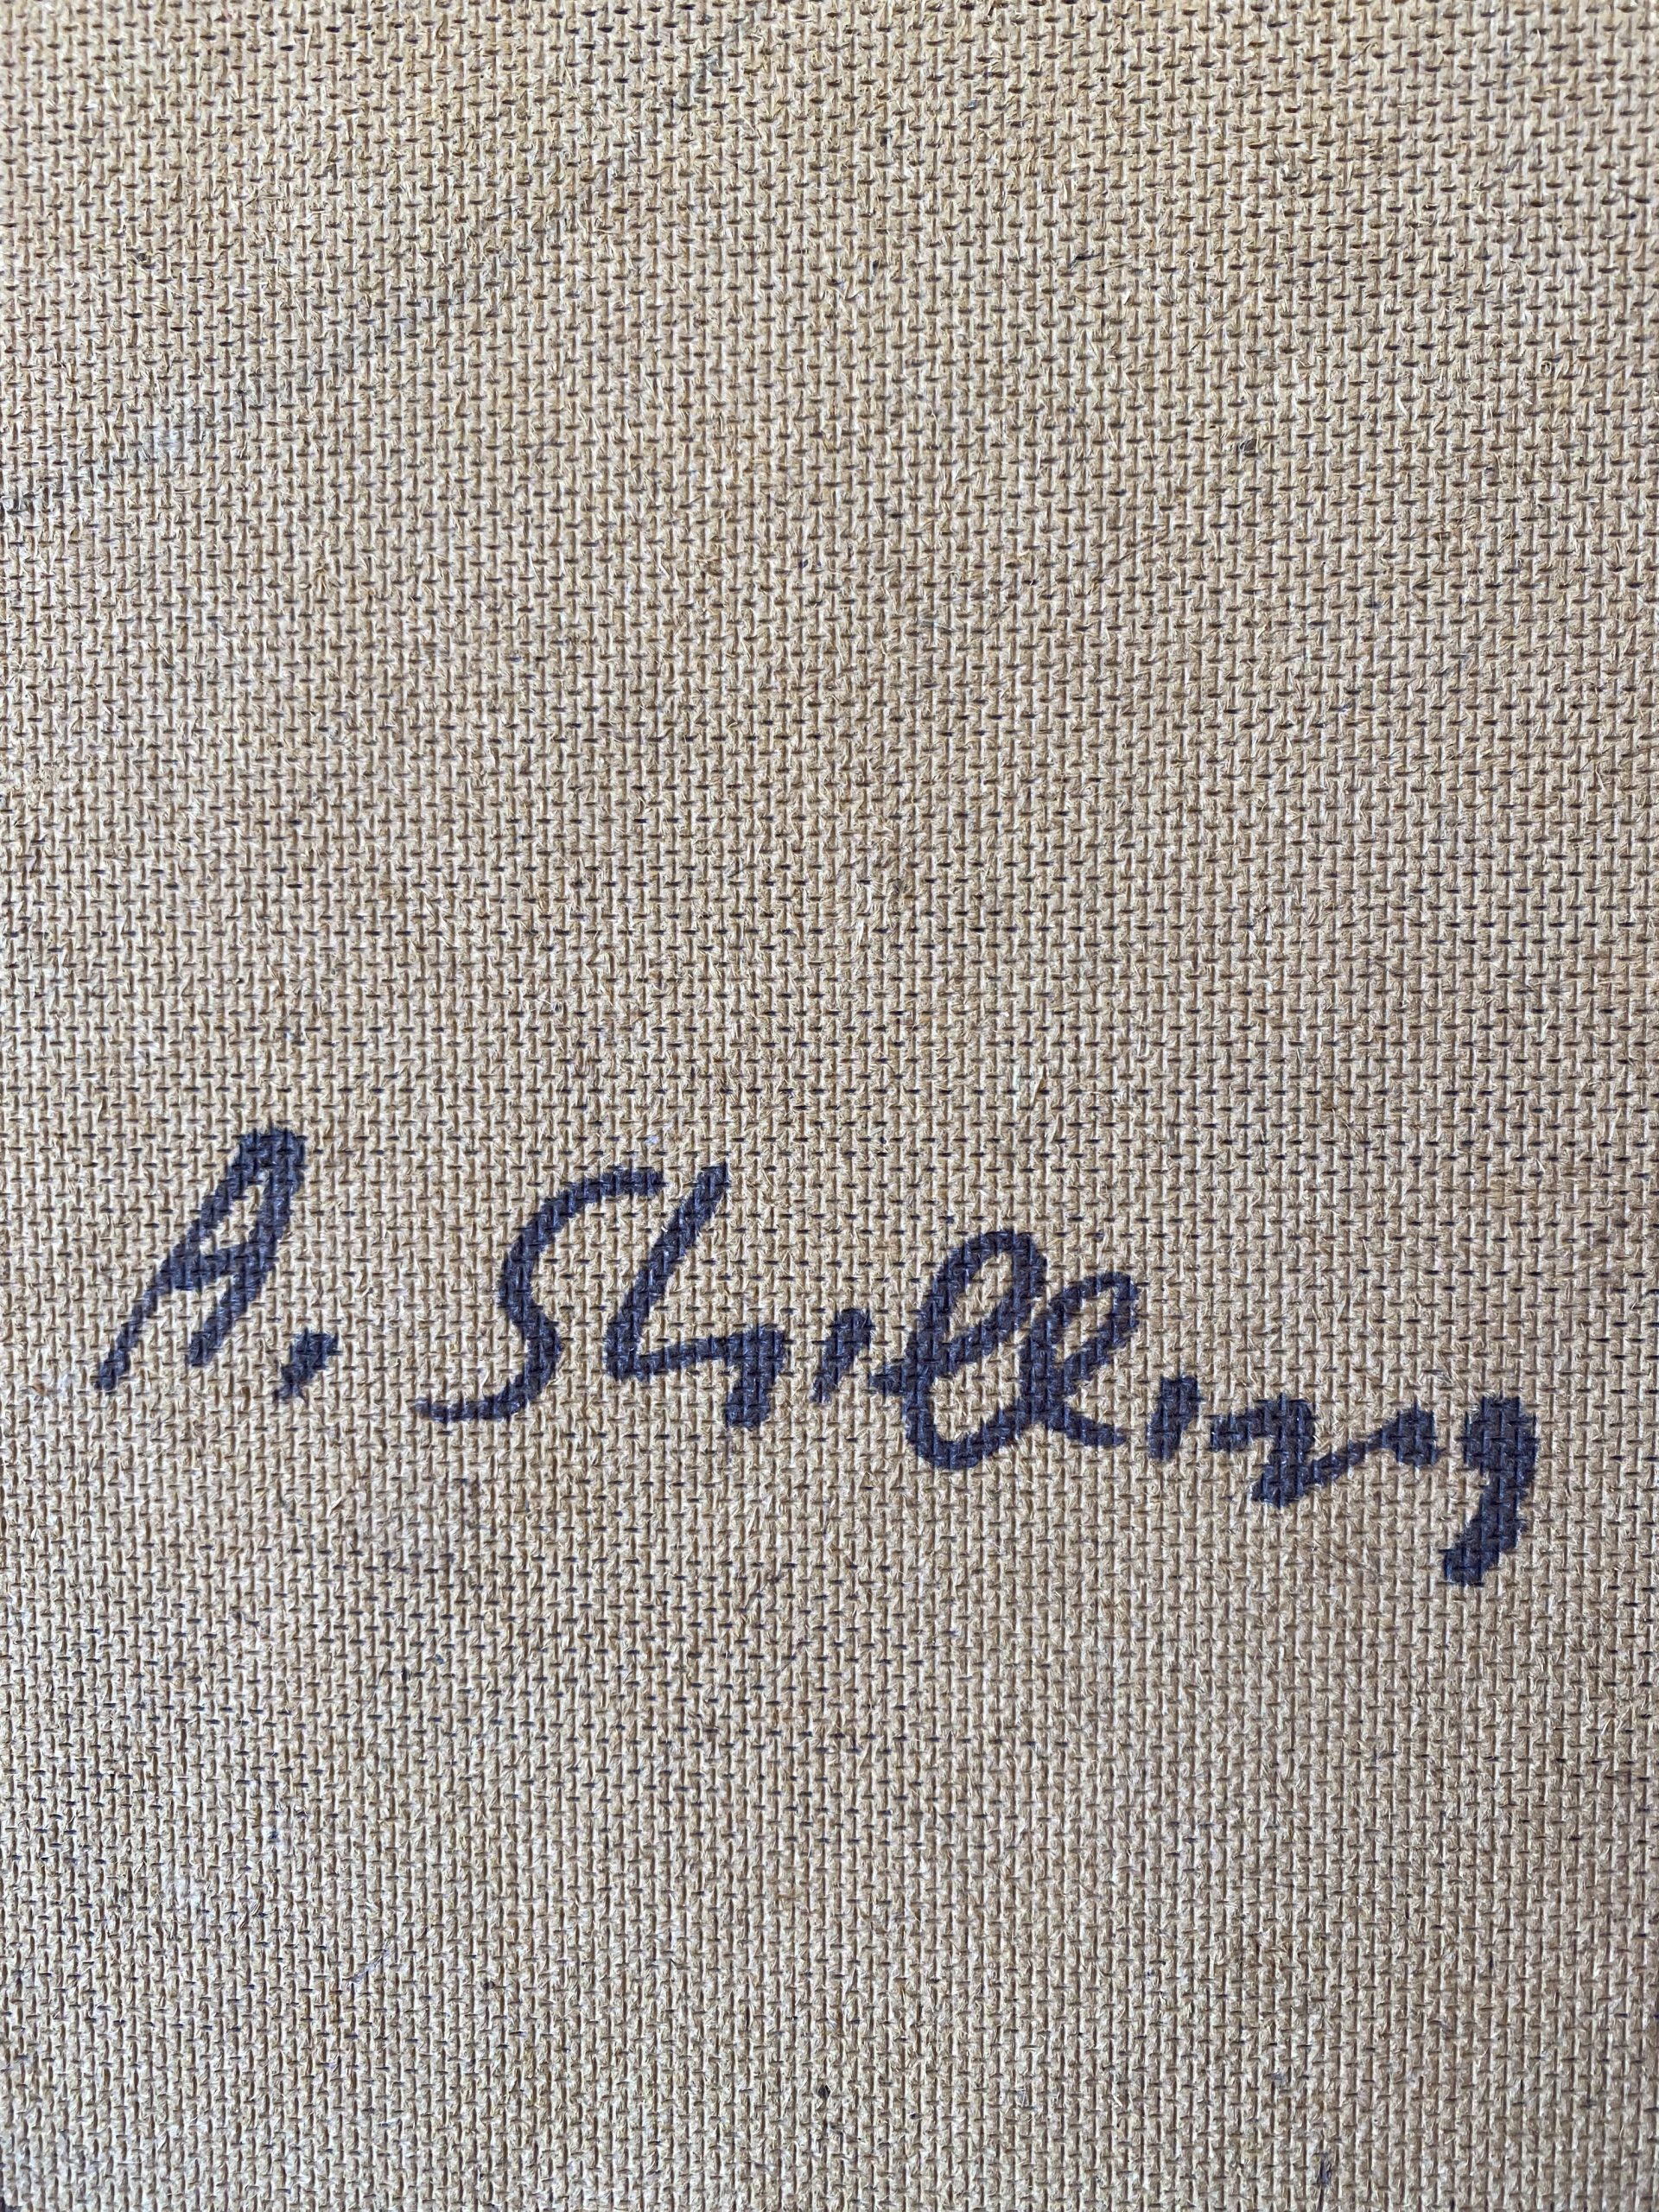 Arthur Shilling